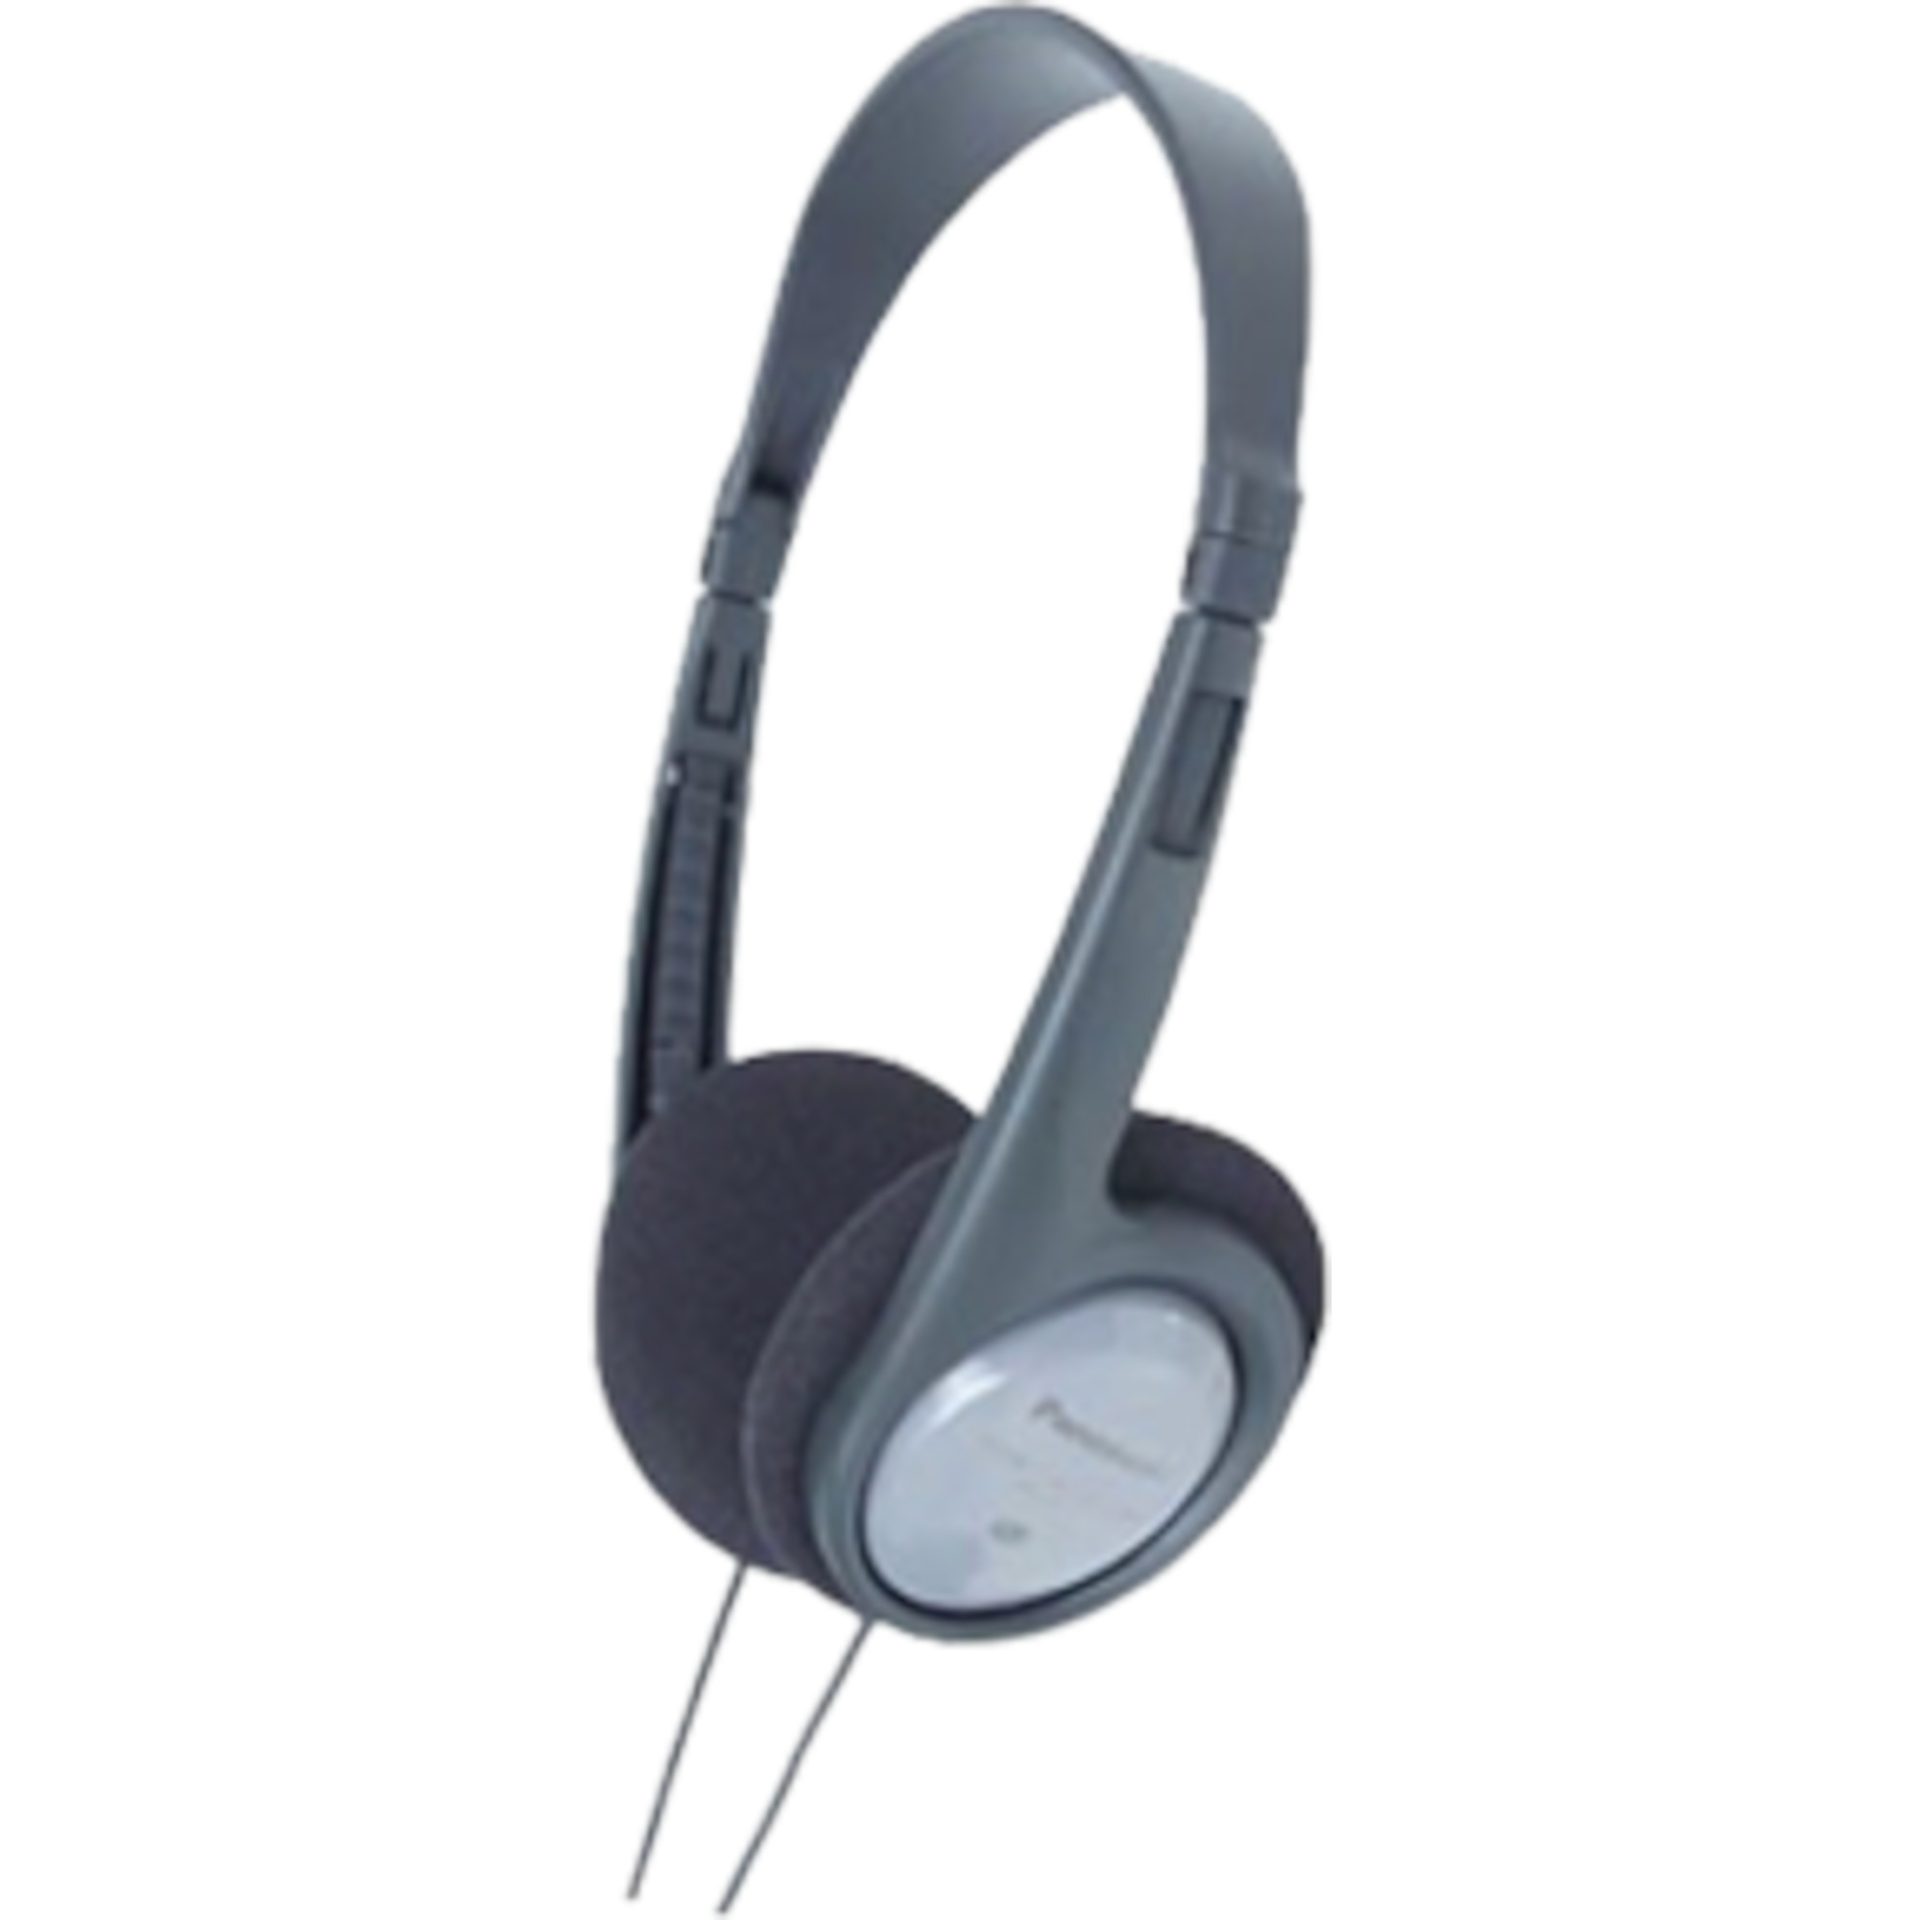 Panasonic RP-HT090 lehká kabelová sluchátka přes uši (5m kabel s ovládáním hlasitosti, měničee 30mm ergonomický hlavový most, systém XBS), šedá